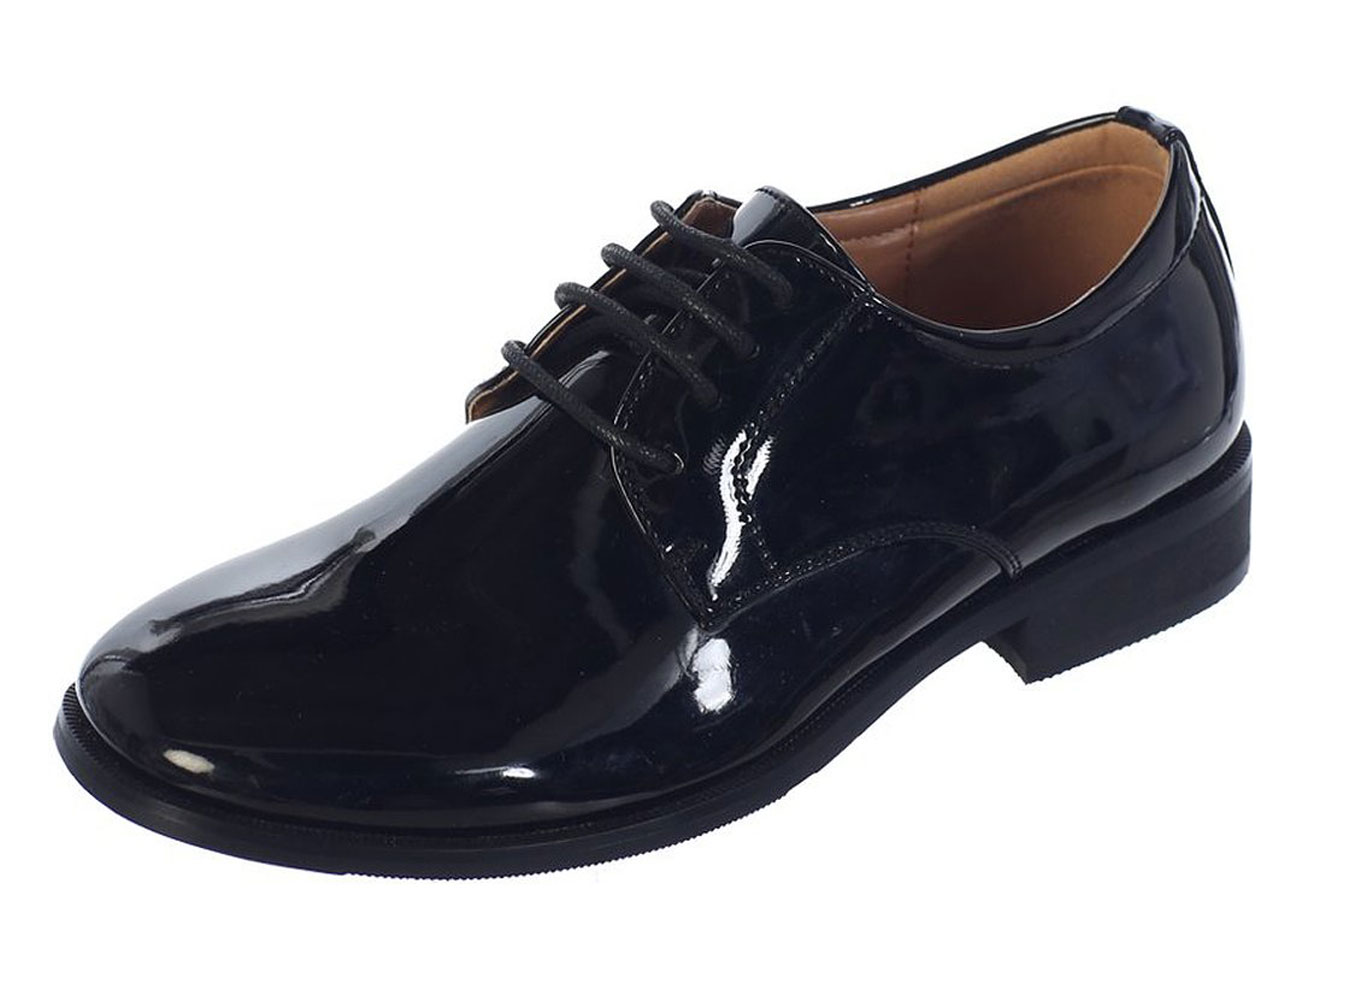 Avery Hill Boys Shiny or Shiny Patent Leather Shoes Bk Shiny Bigkid 3Y